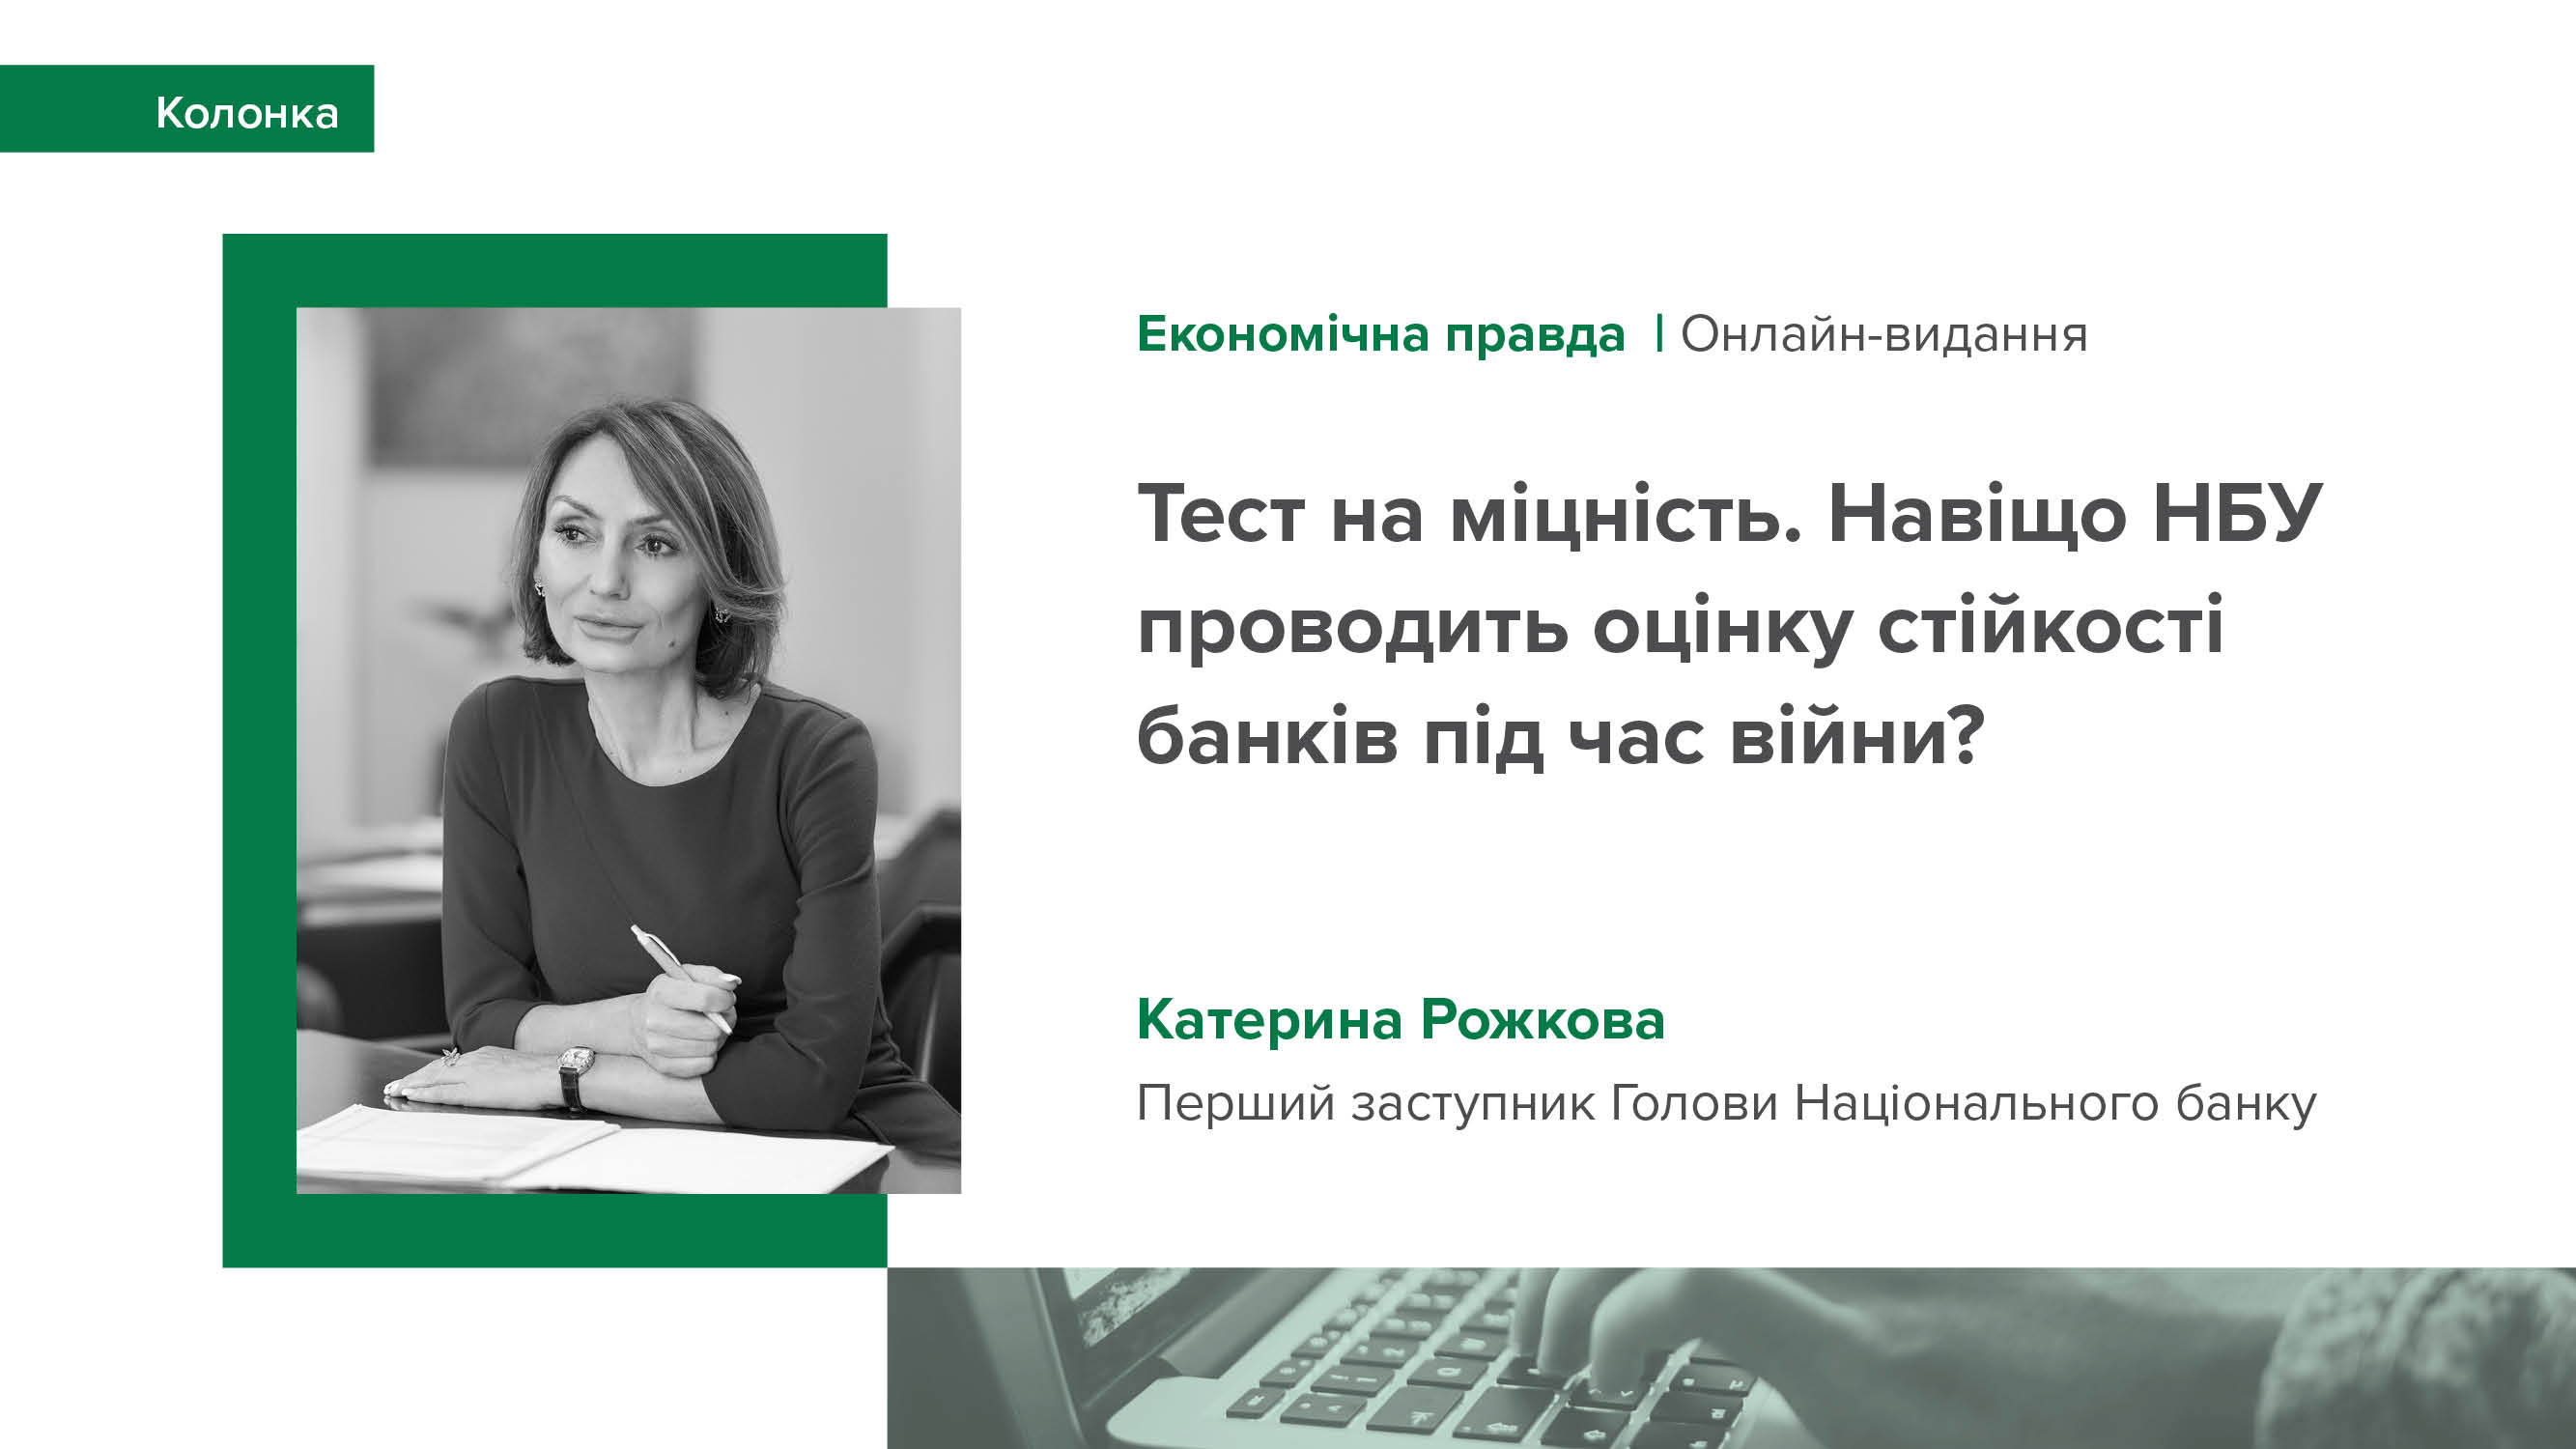 Колонка Катерини Рожкової для "Економічної правди" про оцінку стійкості банків у 2023 році